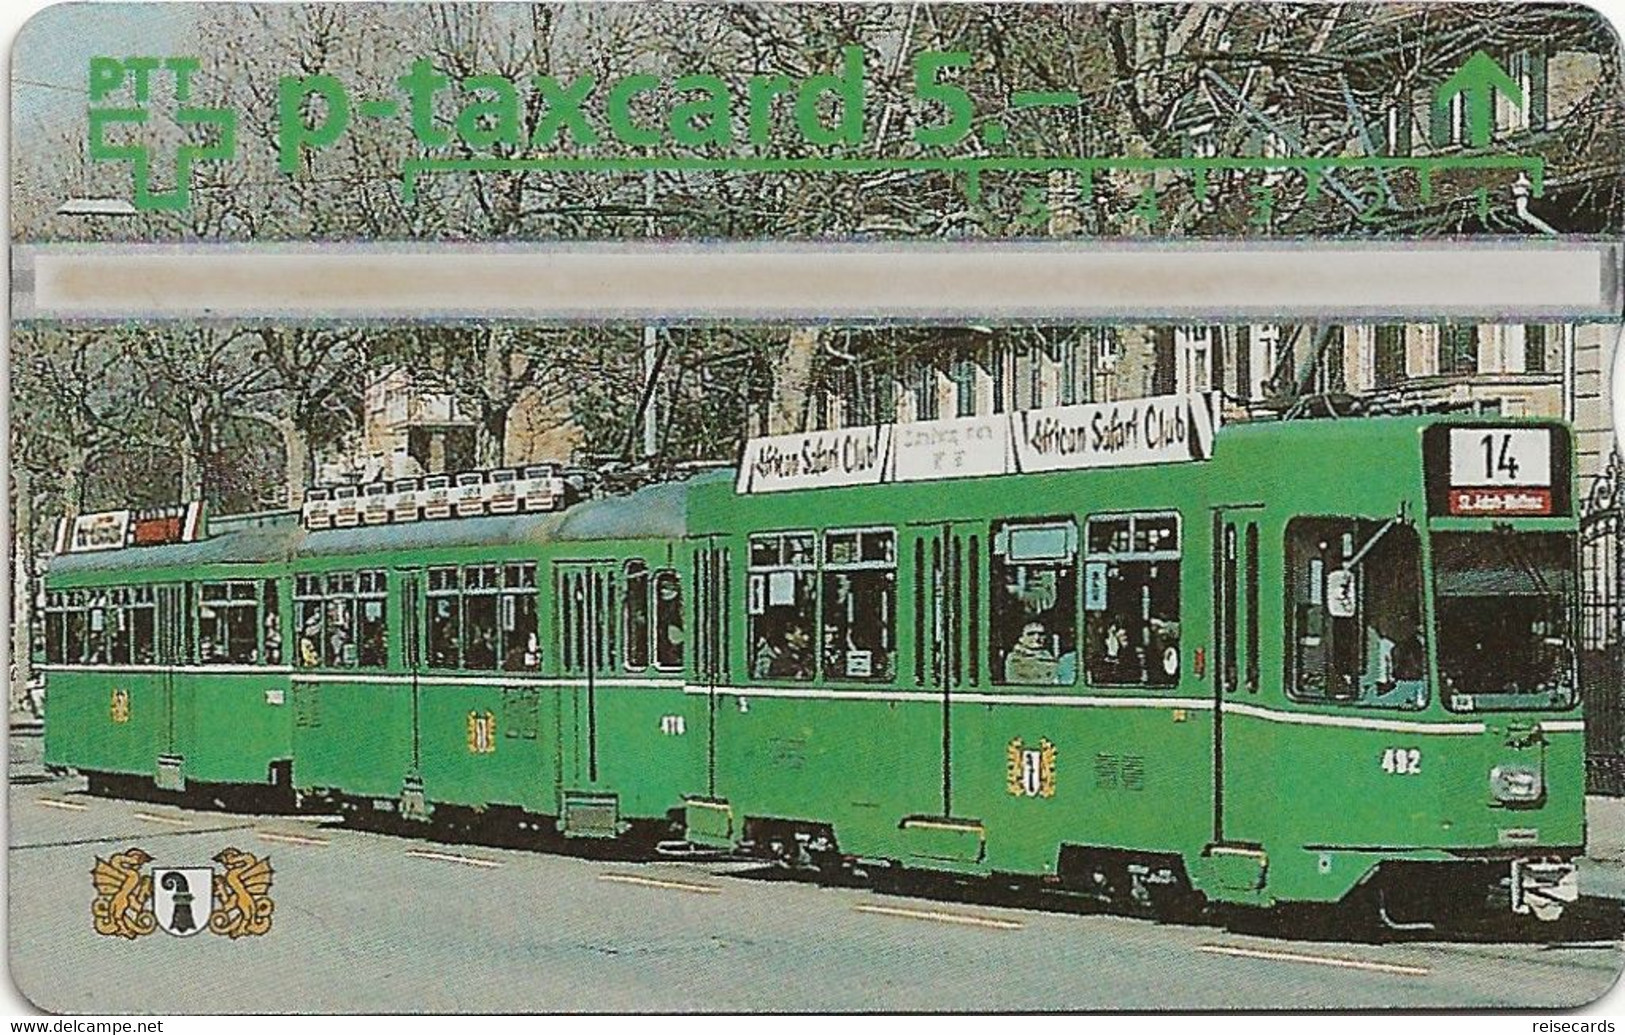 Switzerland: PTT P - KP-94/50C 404L Basler Verkehrs-Betriebe - Dreiwagen-Tramzug - Suiza